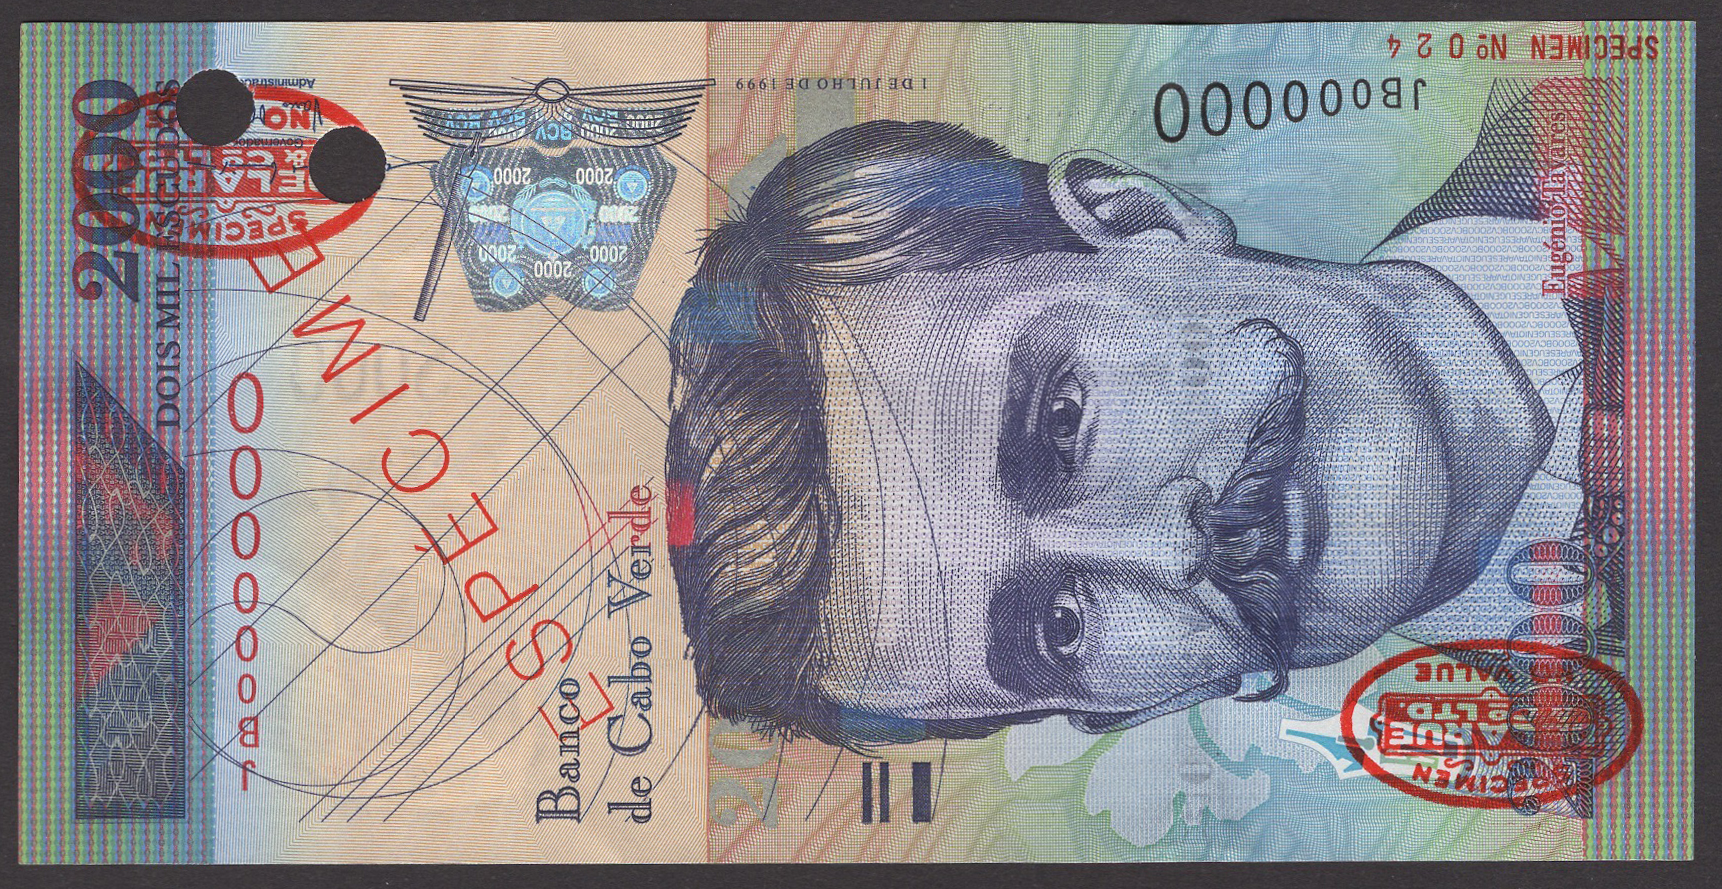 Banco de Cabo Verde, specimen 2000 Escudos, 1 July 1999, serial number JB000000, red...